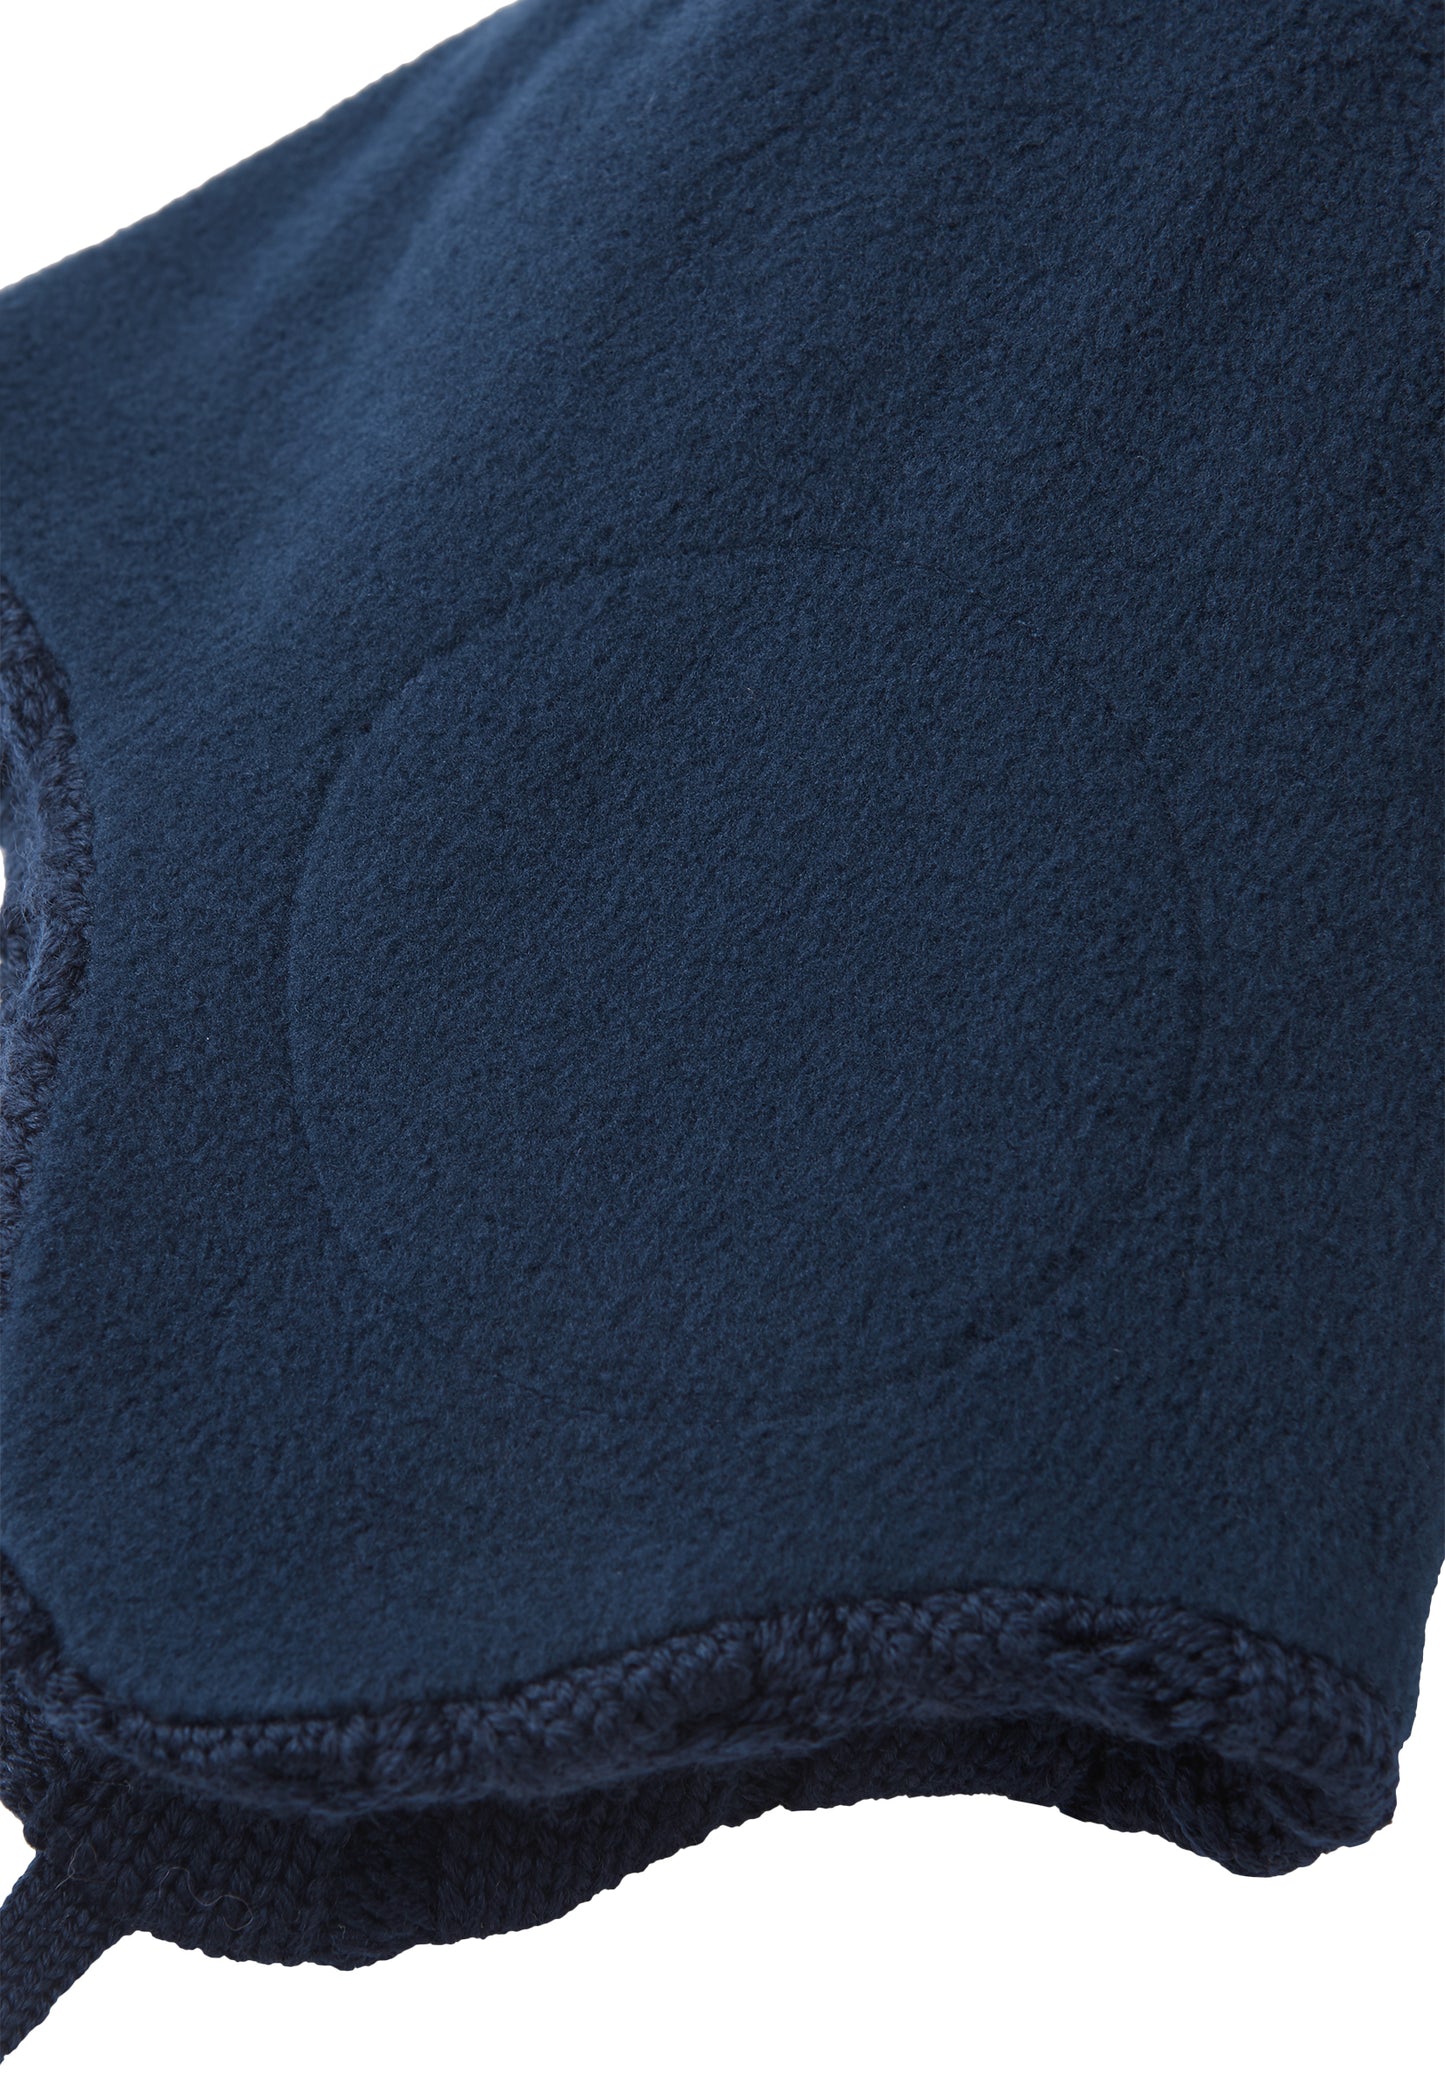 Reima Mütze mit Bändel <br>Nunavut <br>Gr. 46 bis 54 <br>innen hautfreundliches Fleece<br> aussen warme, wasserabweisende Merino-Wolle<br> Windstopper-Membrane im Ohrbereich